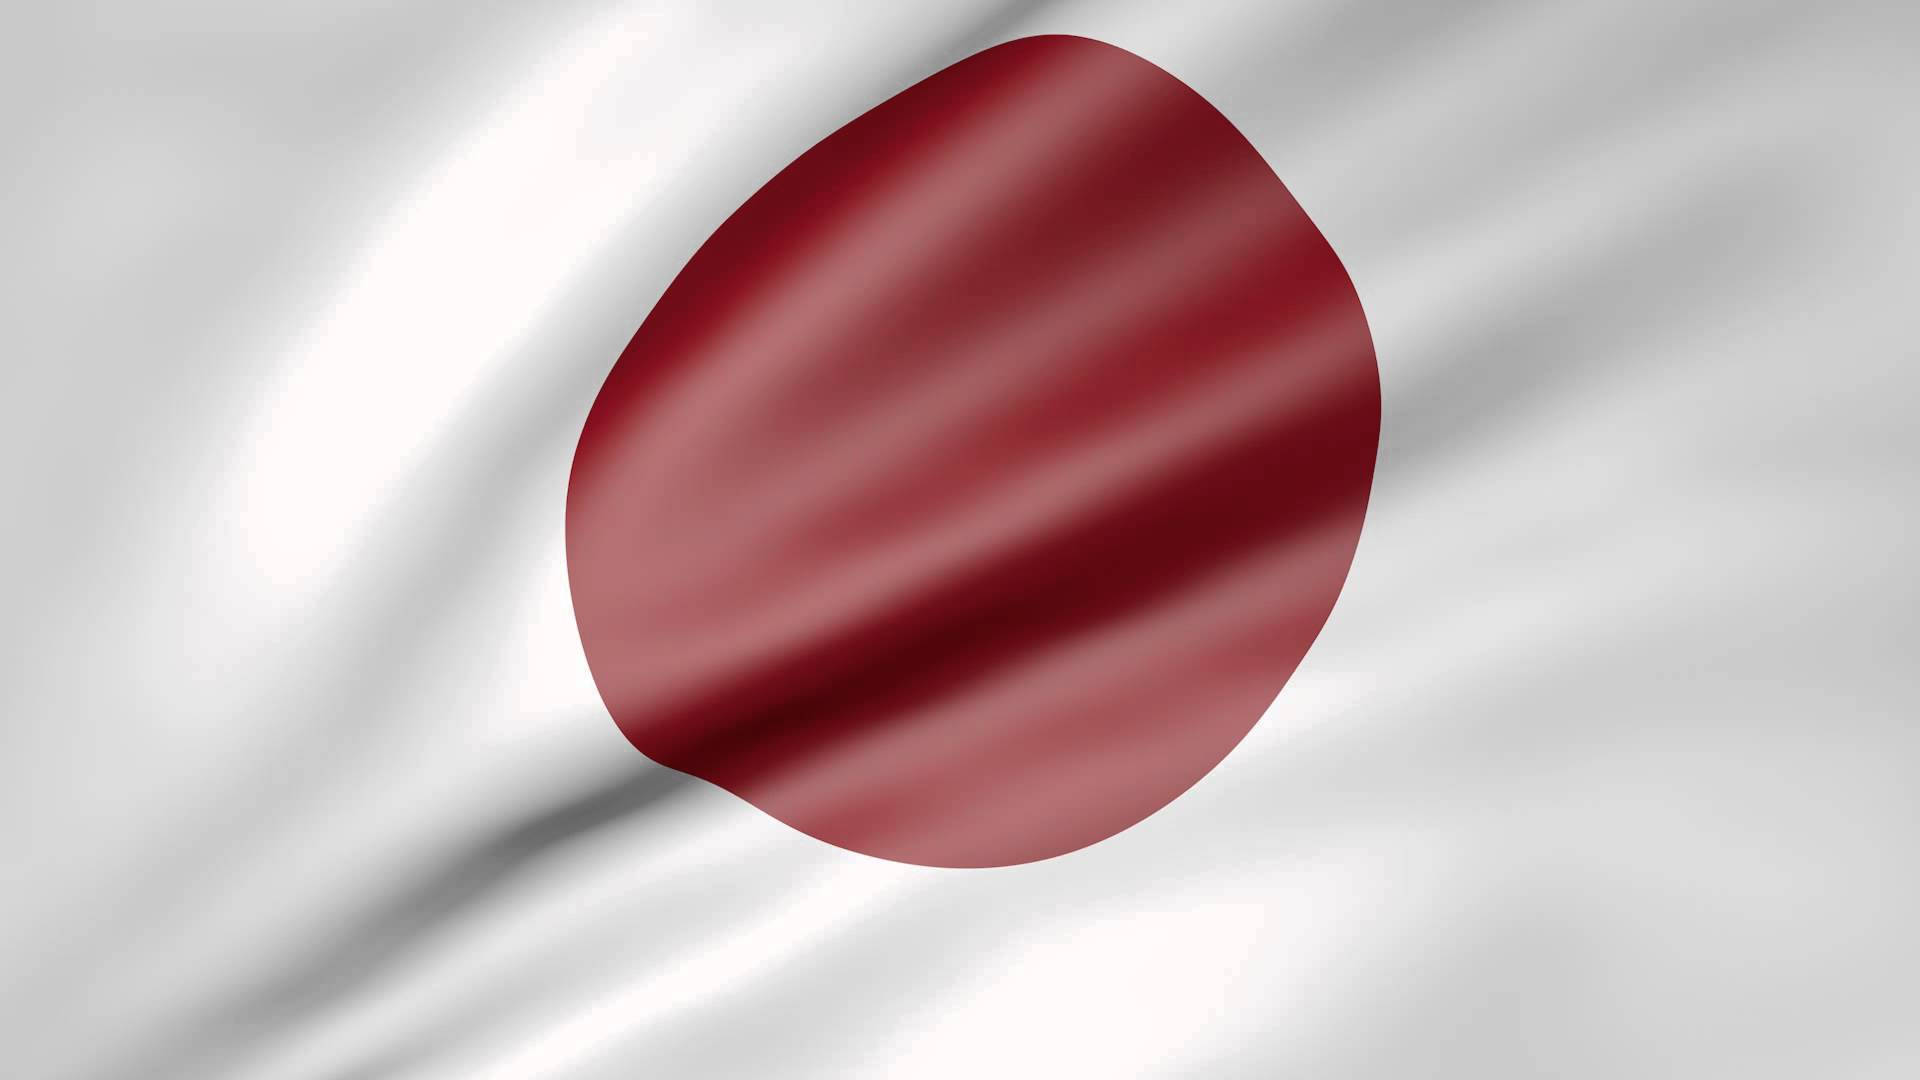 Pañobrillante De La Bandera De Japón Fondo de pantalla